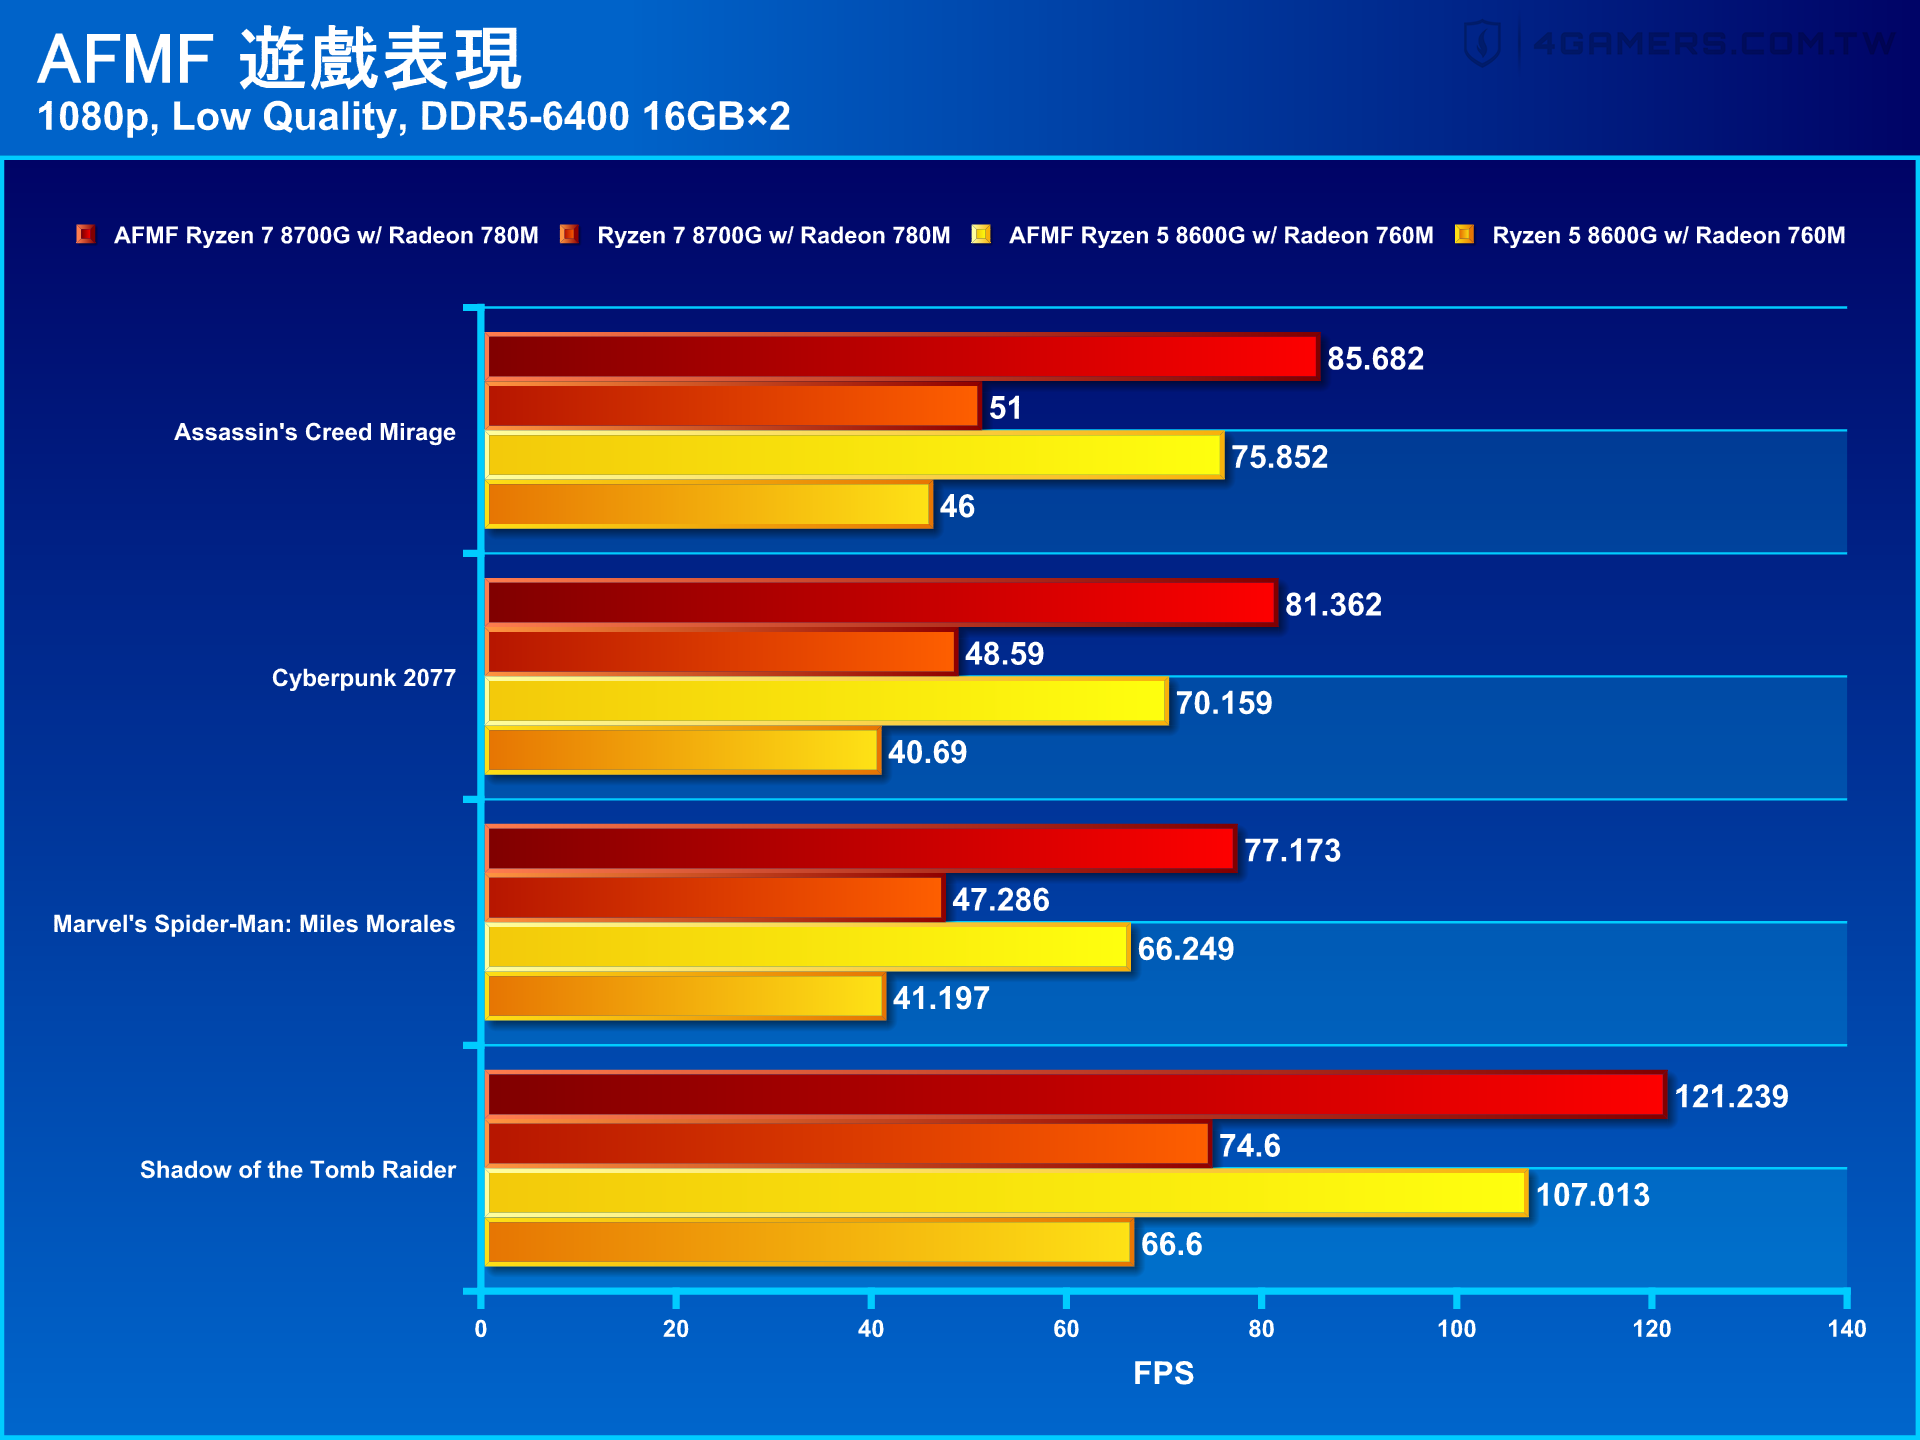 AMD Ryzen 7 8700G and Ryzen 5 8600G